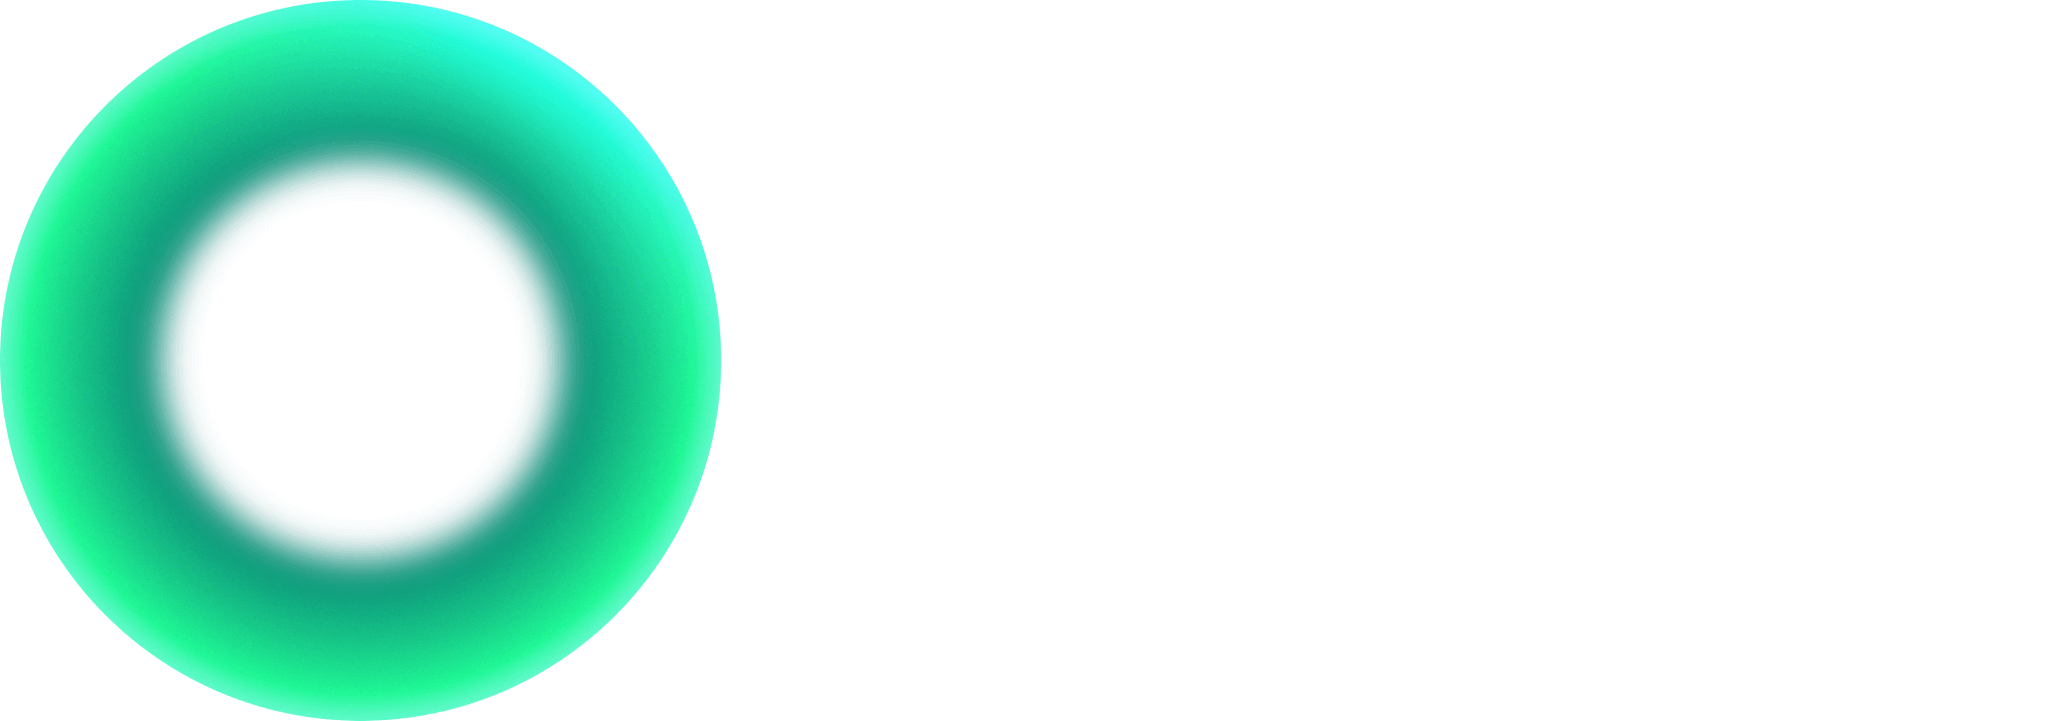 godzone-logo2